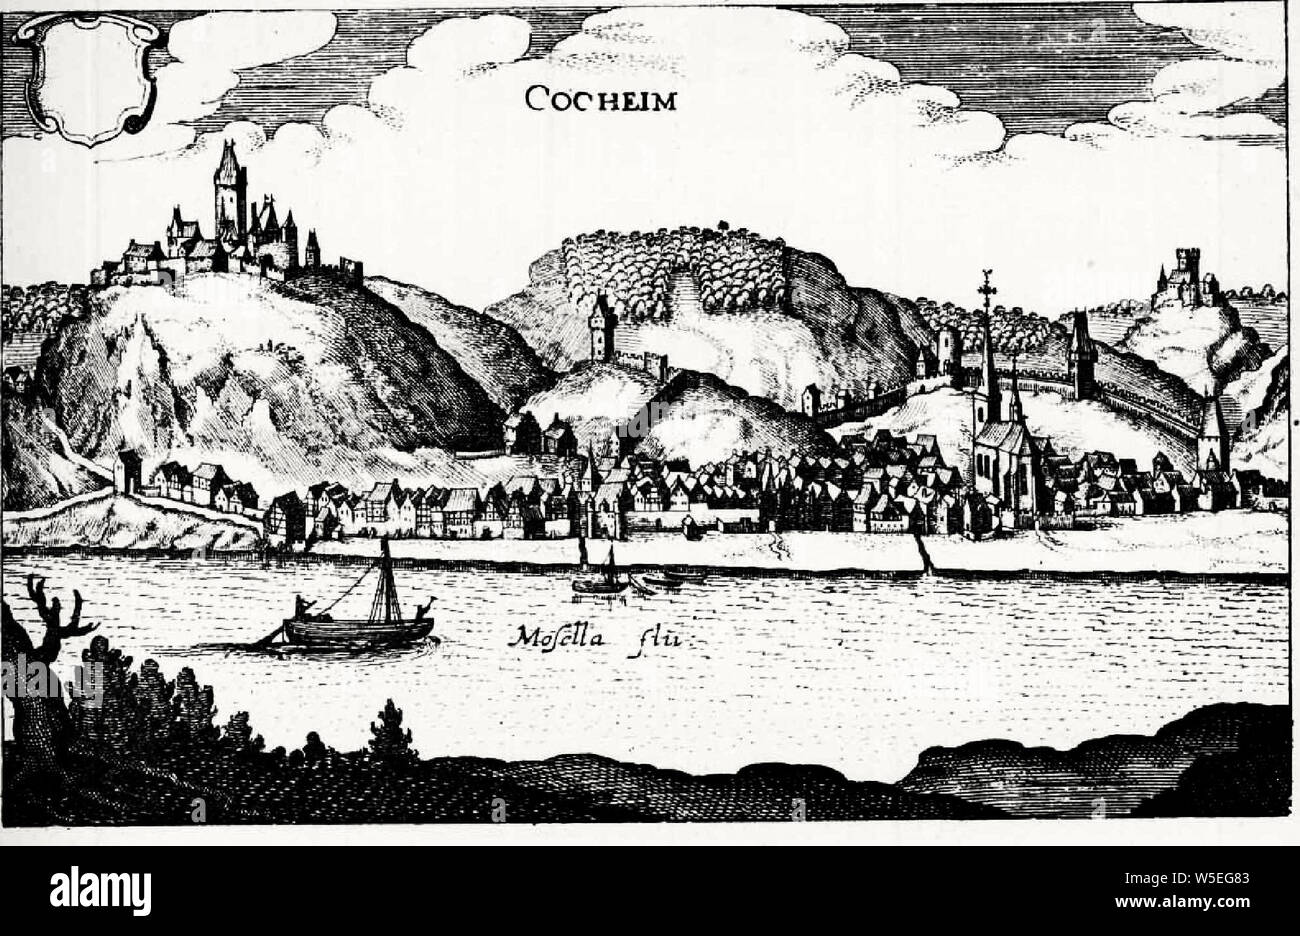 Cocheim (Merian), Deutschland - 1646 Stockfoto